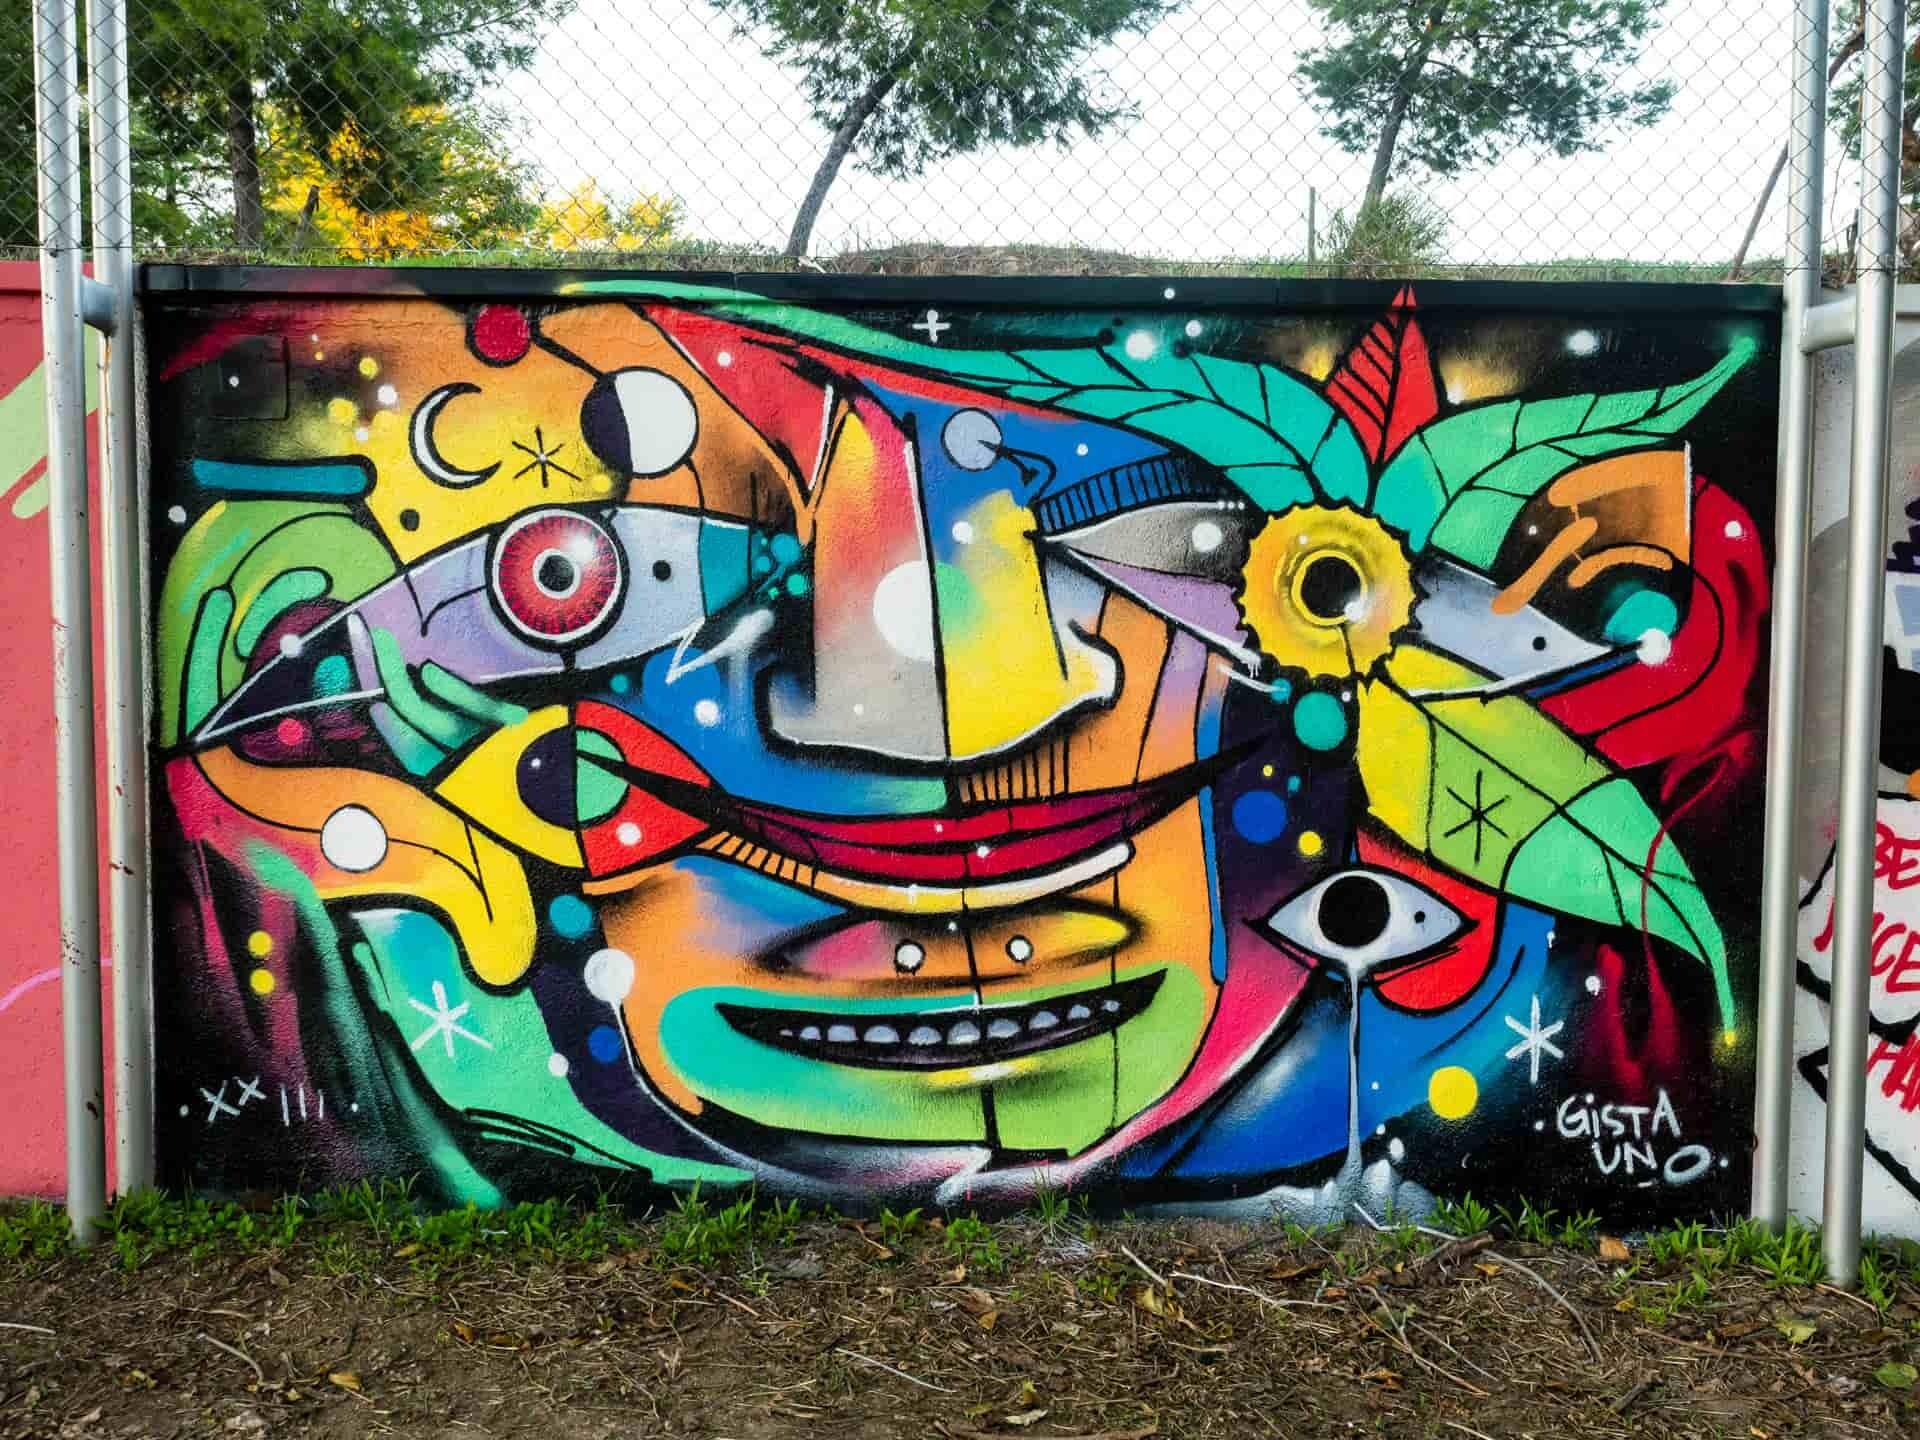 ci urban fest murales arte urbano gista uno